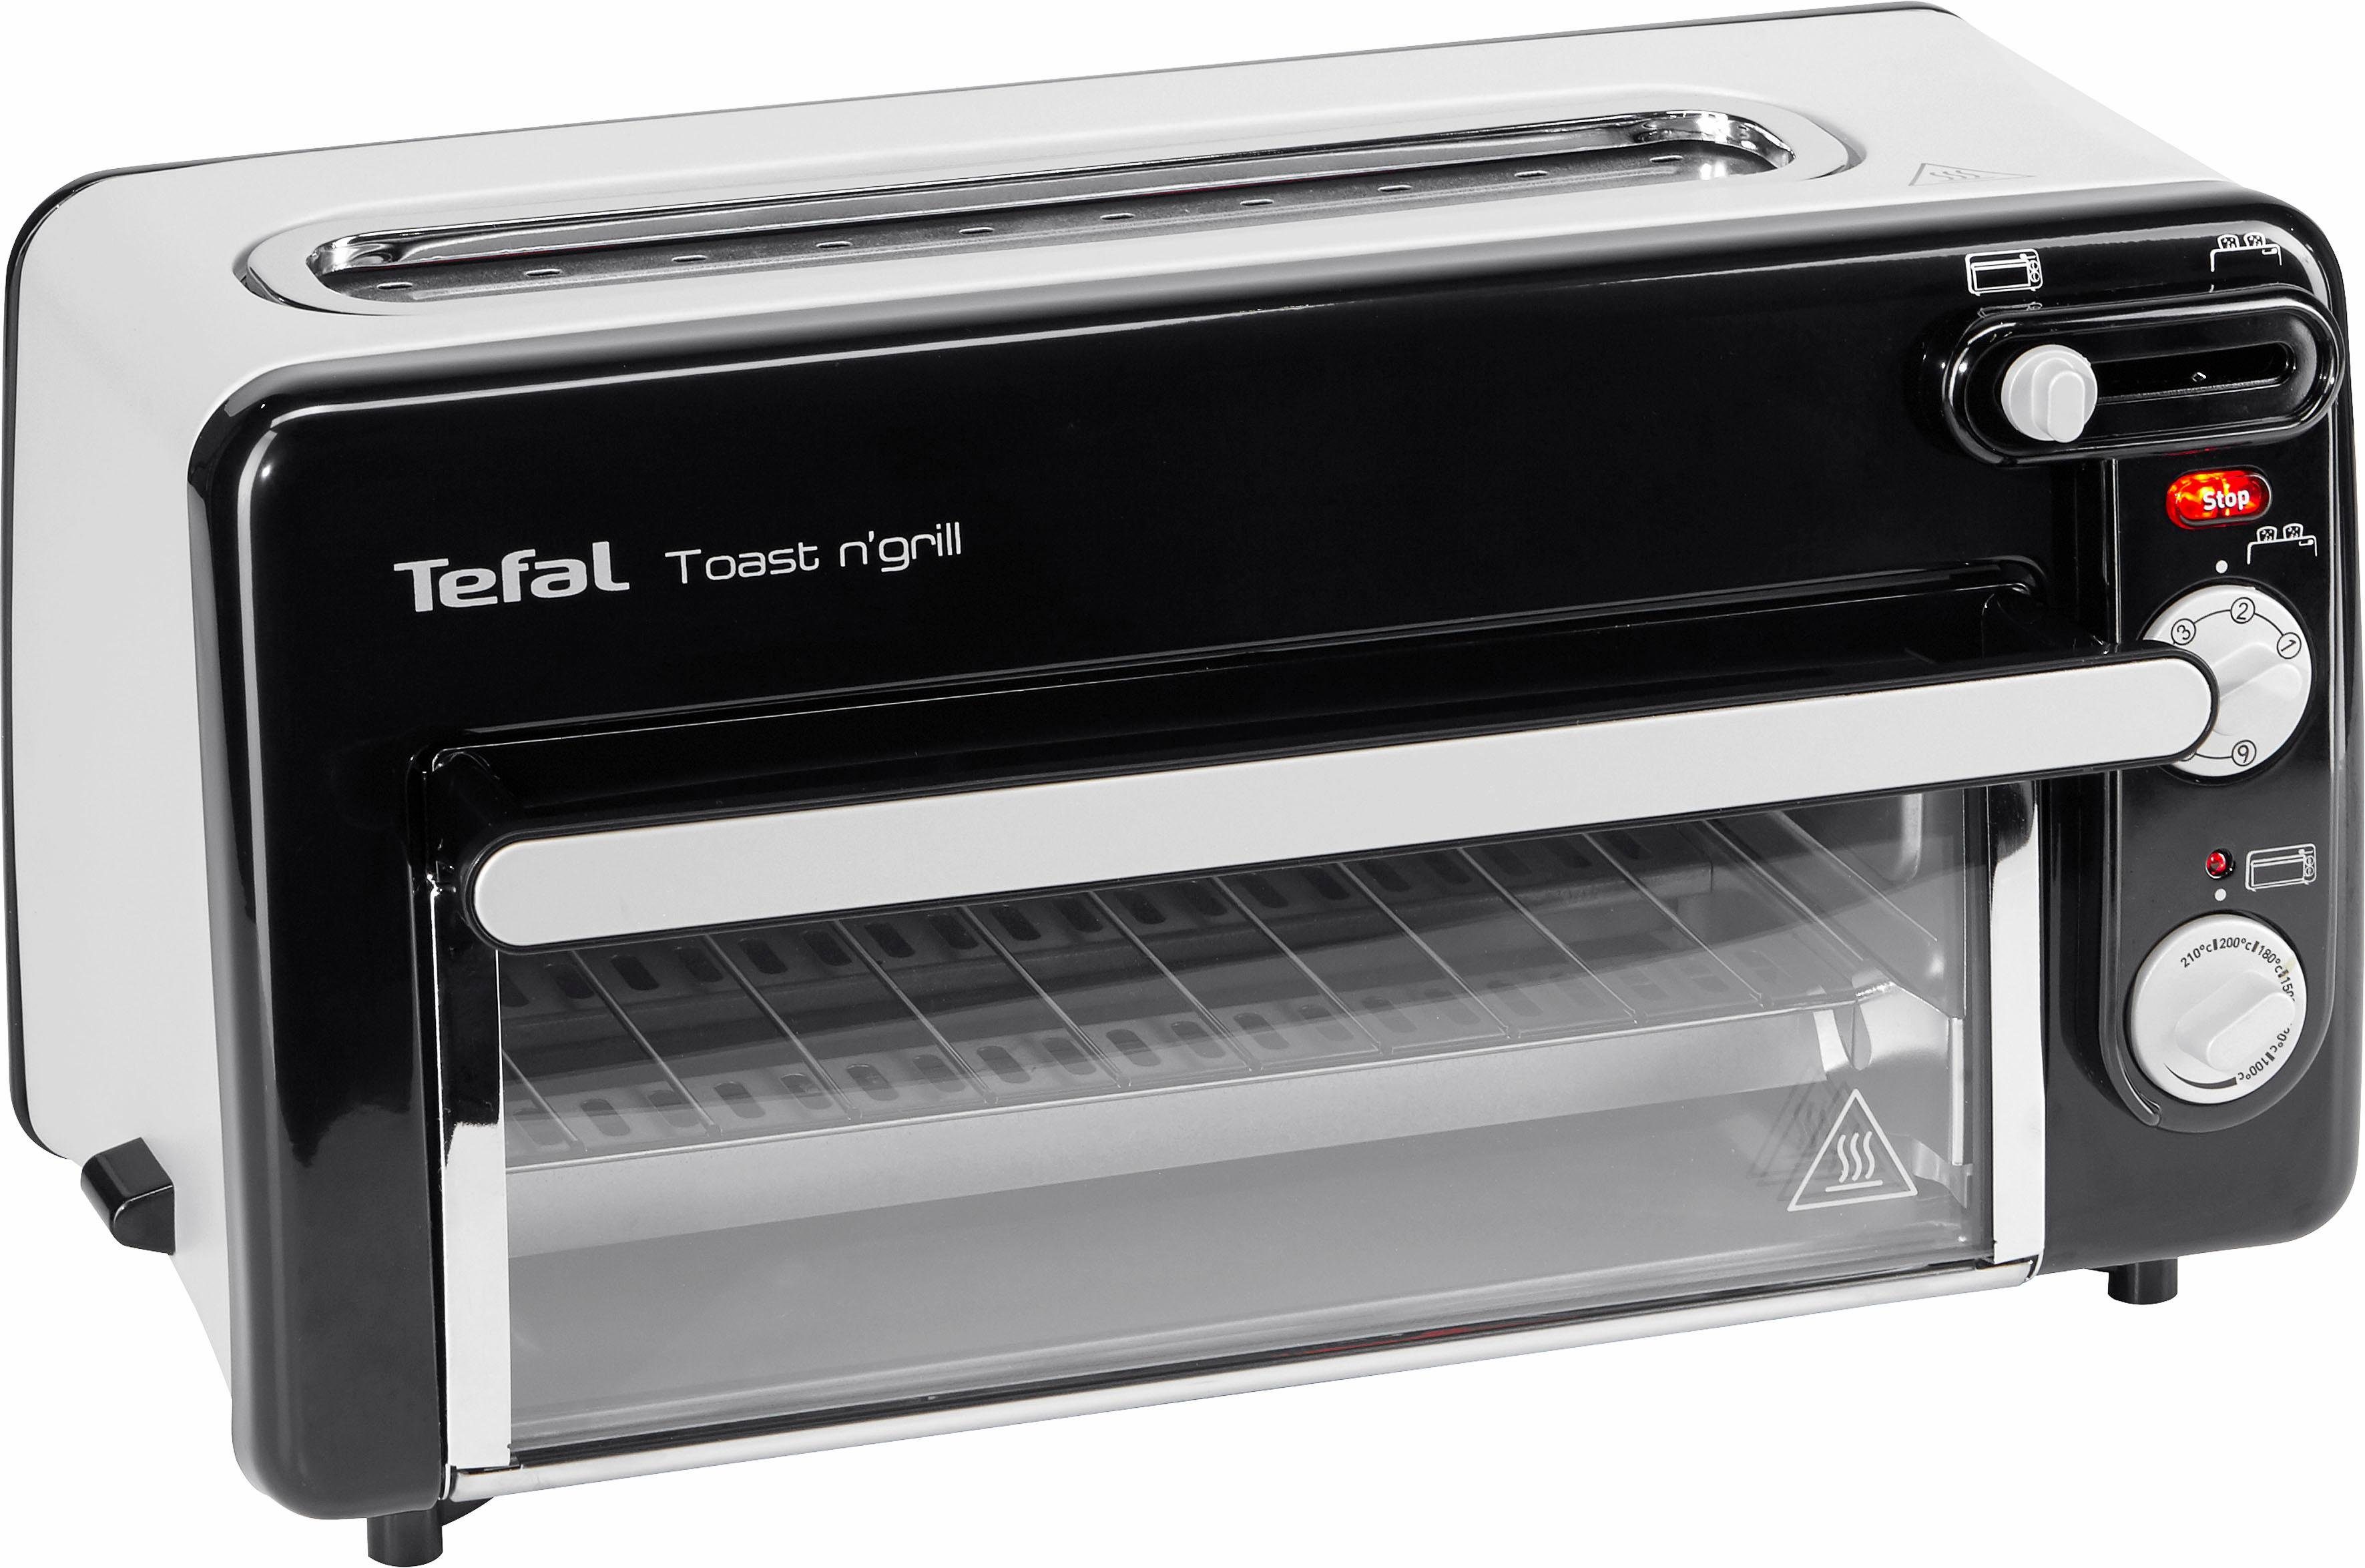 Aanvrager raket Bekentenis Tefal Mini-oven TL6008 Toast n' Grill zeer energiezuinig en snel, 1300 w  makkelijk besteld | OTTO